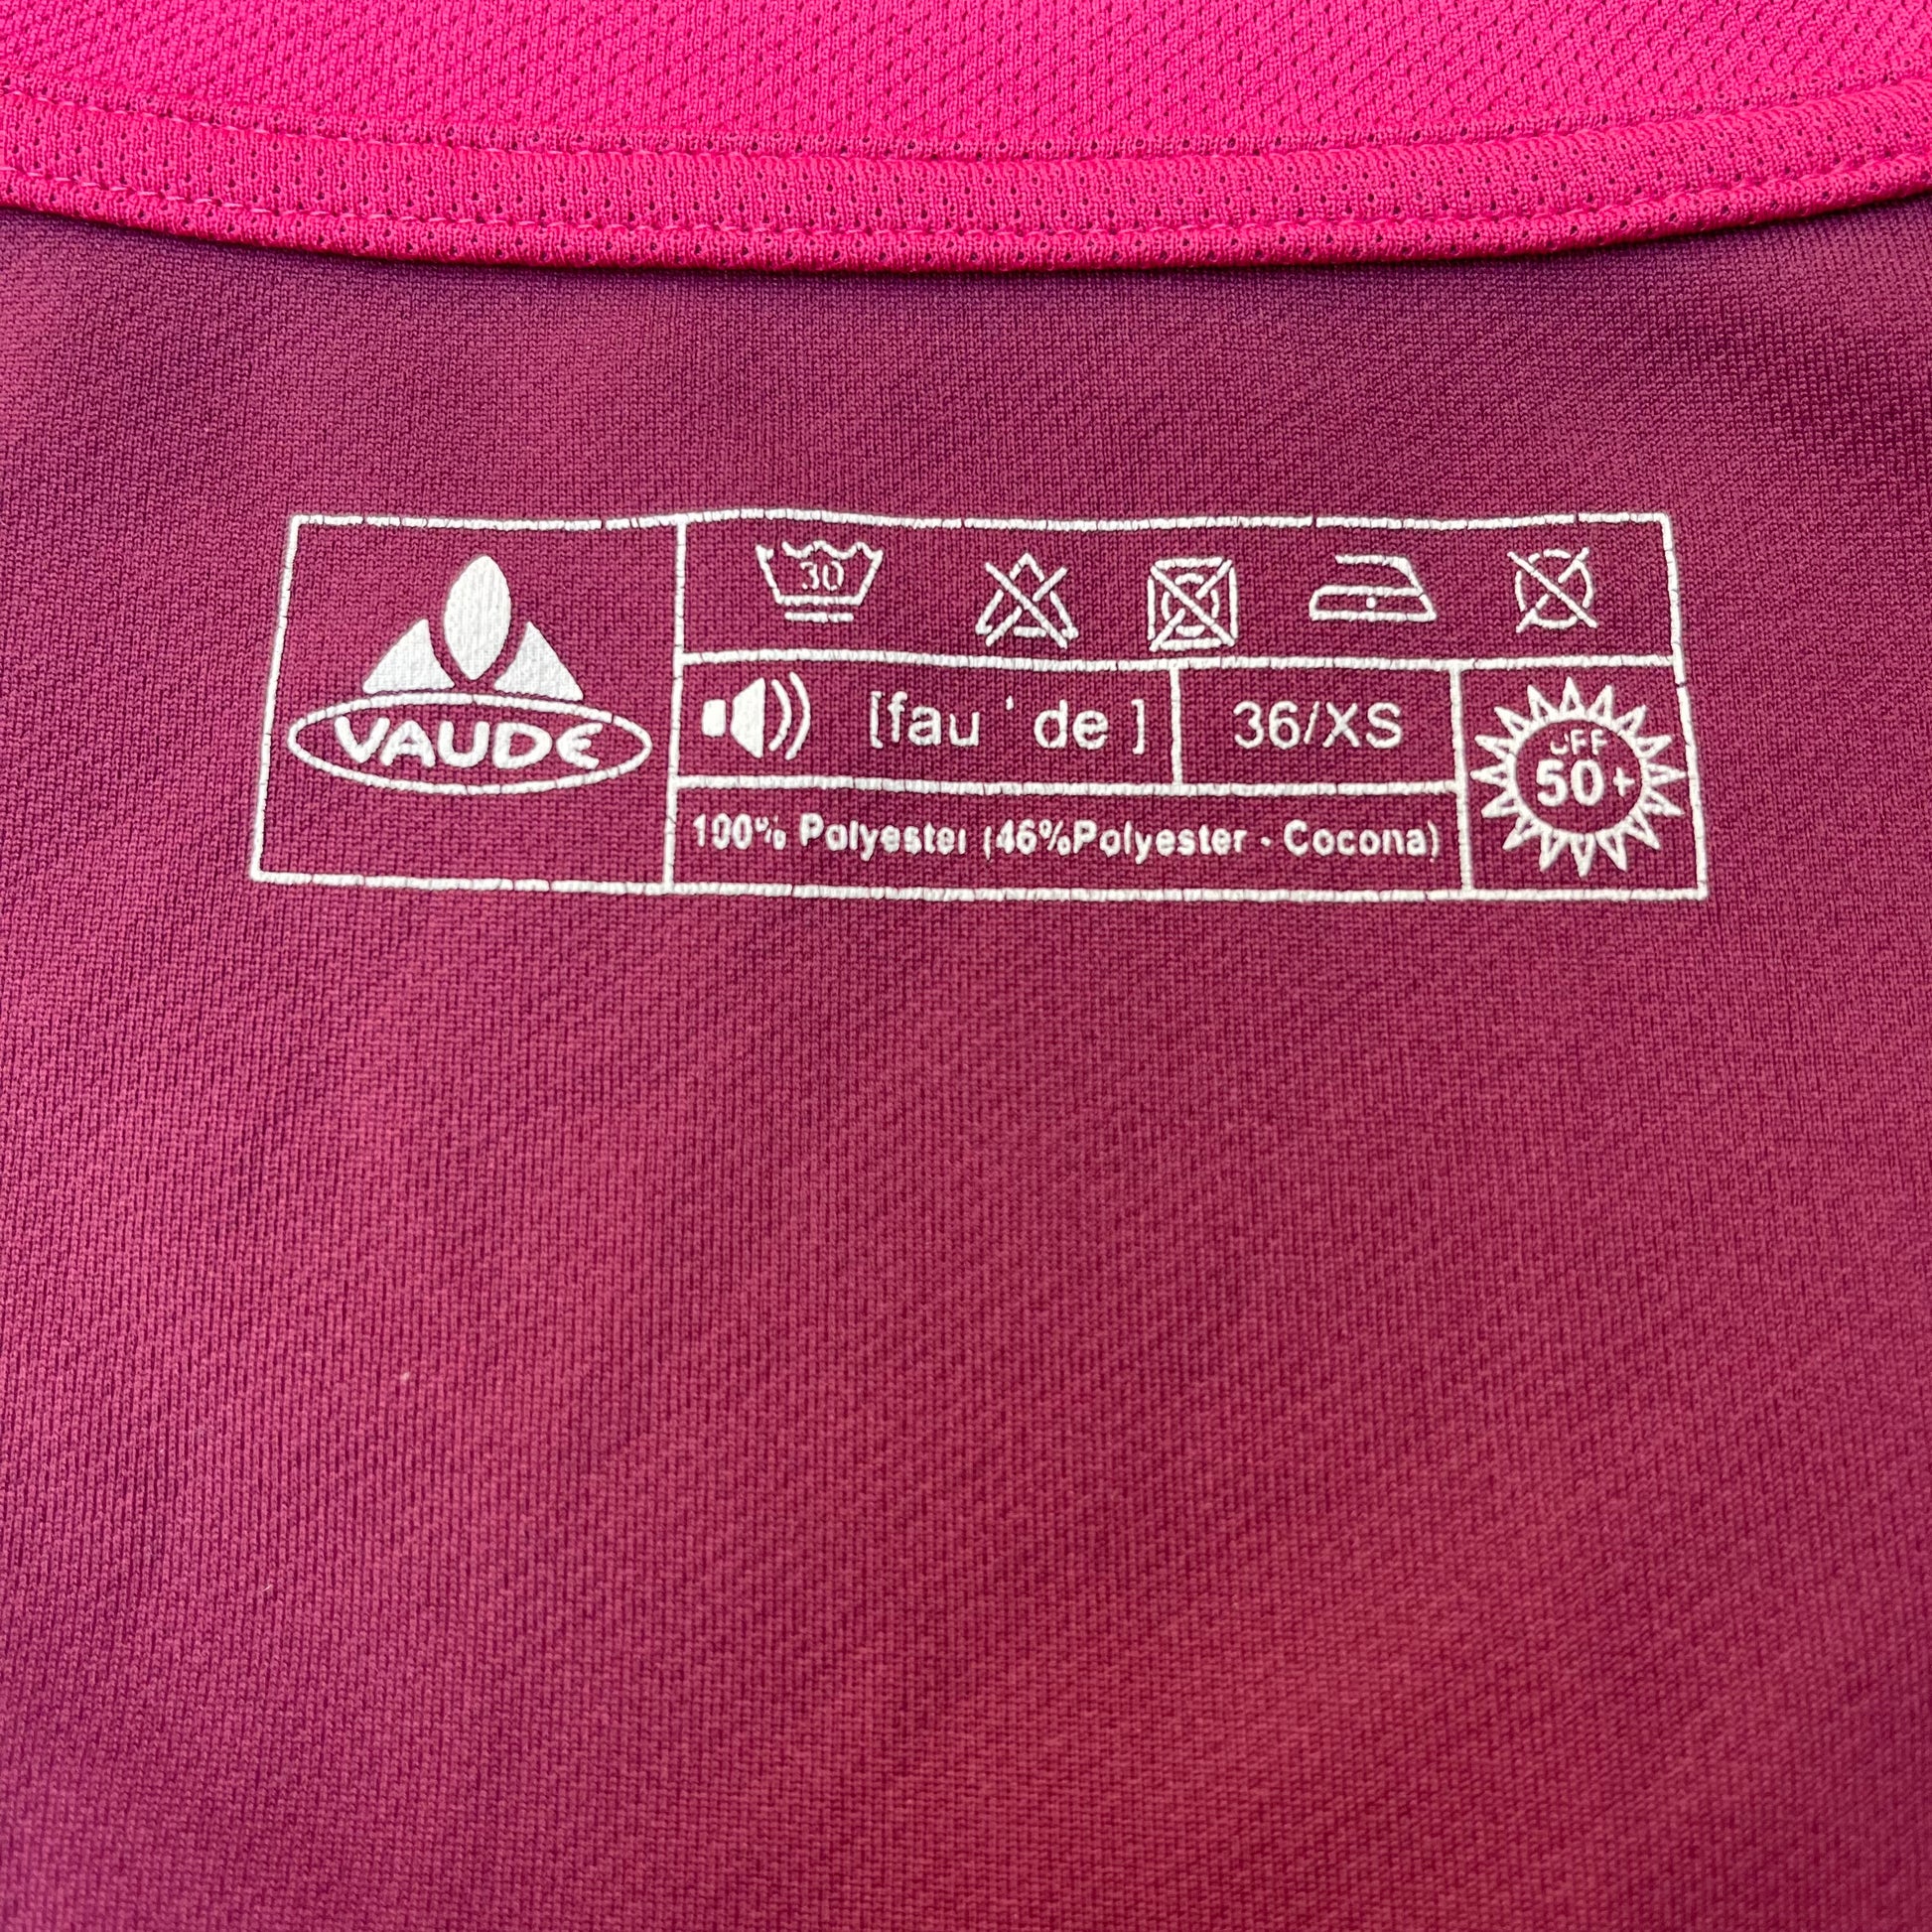 T-Shirt von Vaude Damen XS pink neu - wanderlich.com